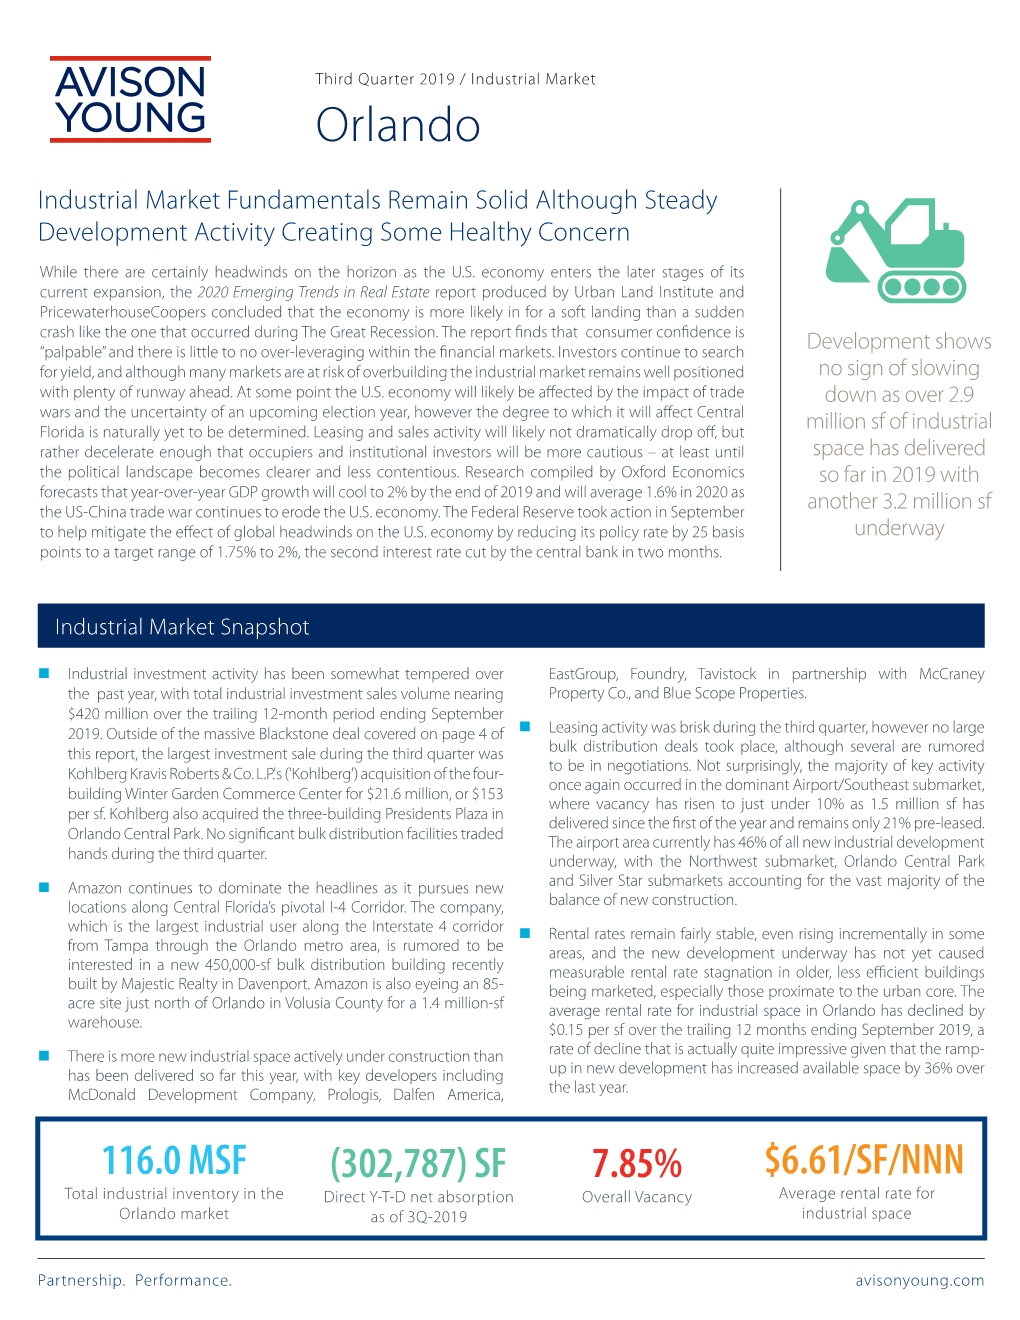 Orlando Industrial Market Report